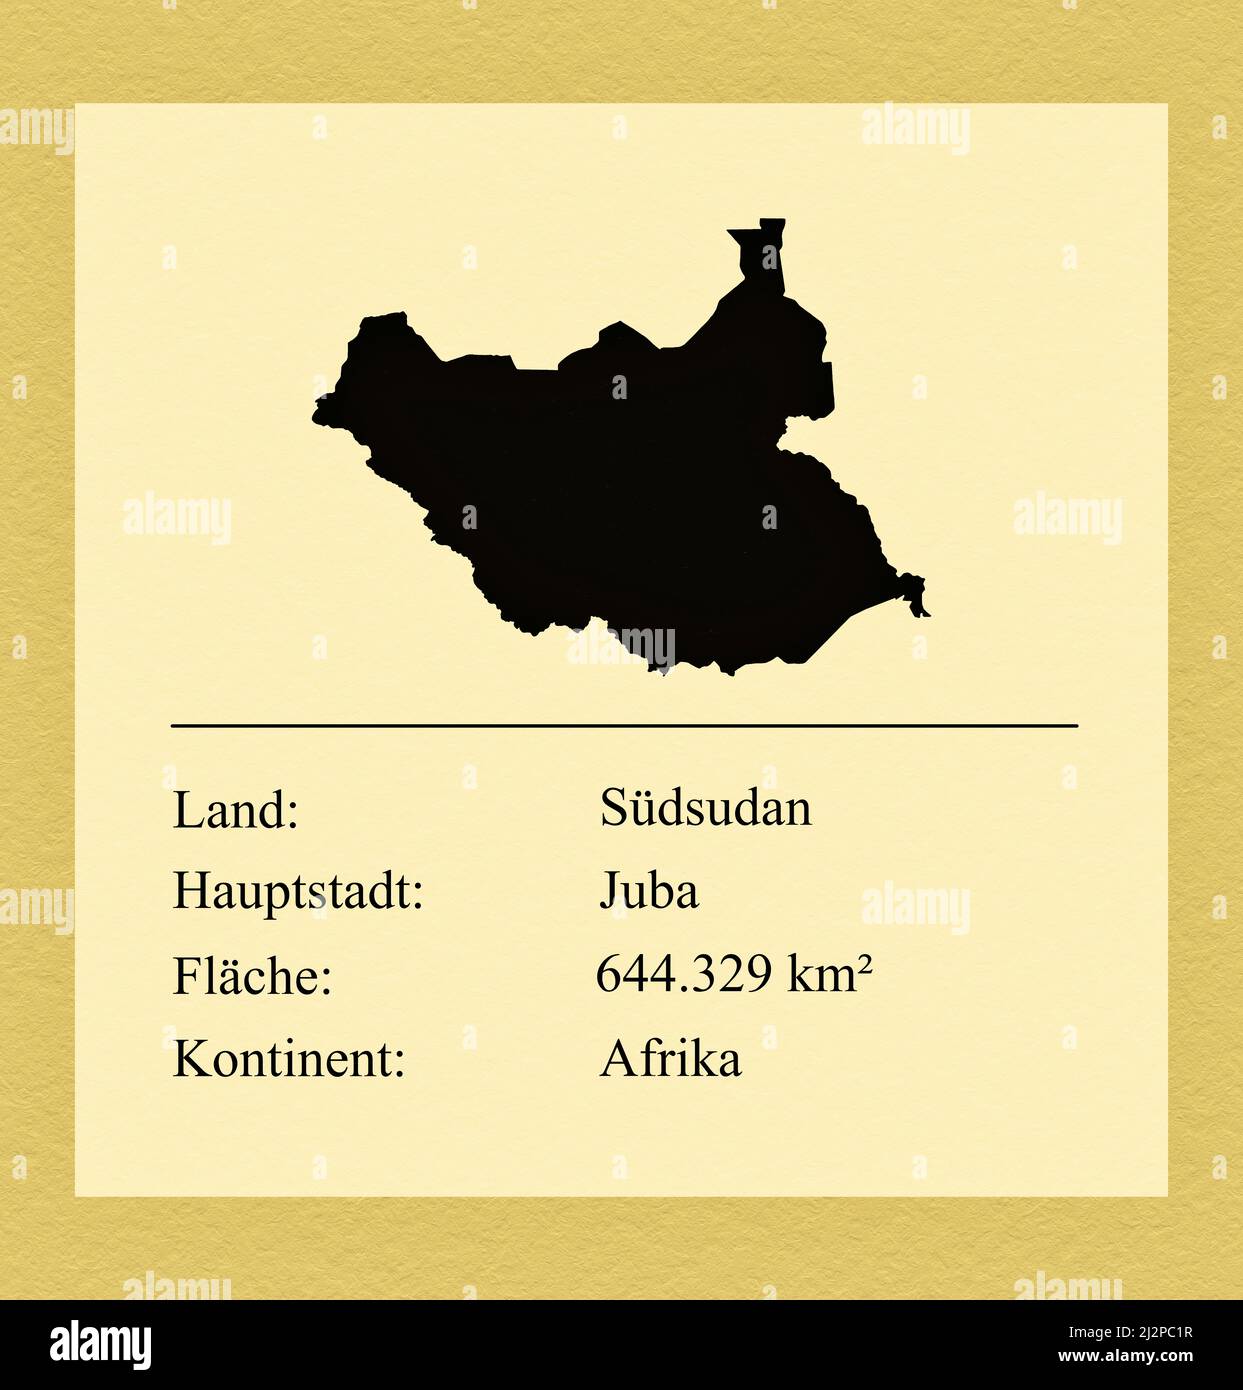 Umrisse des Landes Südsudan, darunter ein kleiner Steckbrief mit Ländernamen, Hauptstadt, Fläche und Kontinent Foto de stock